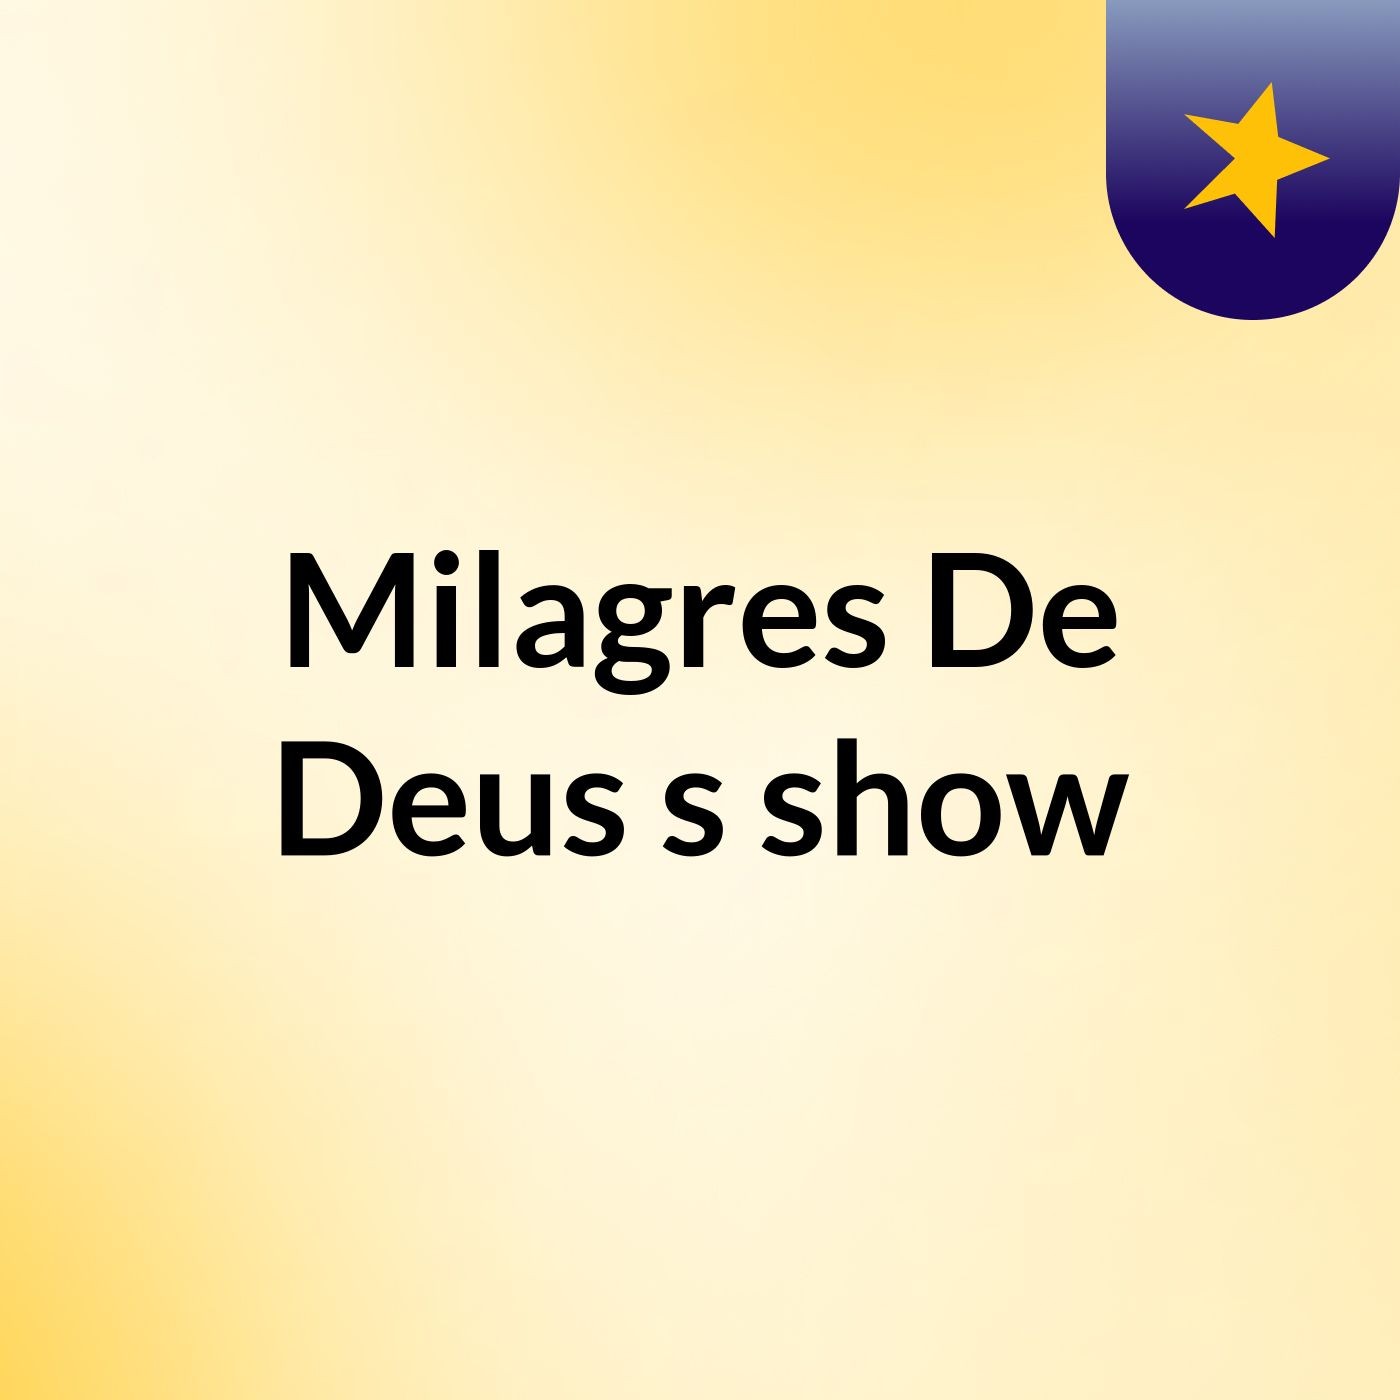 Milagres De Deus's show